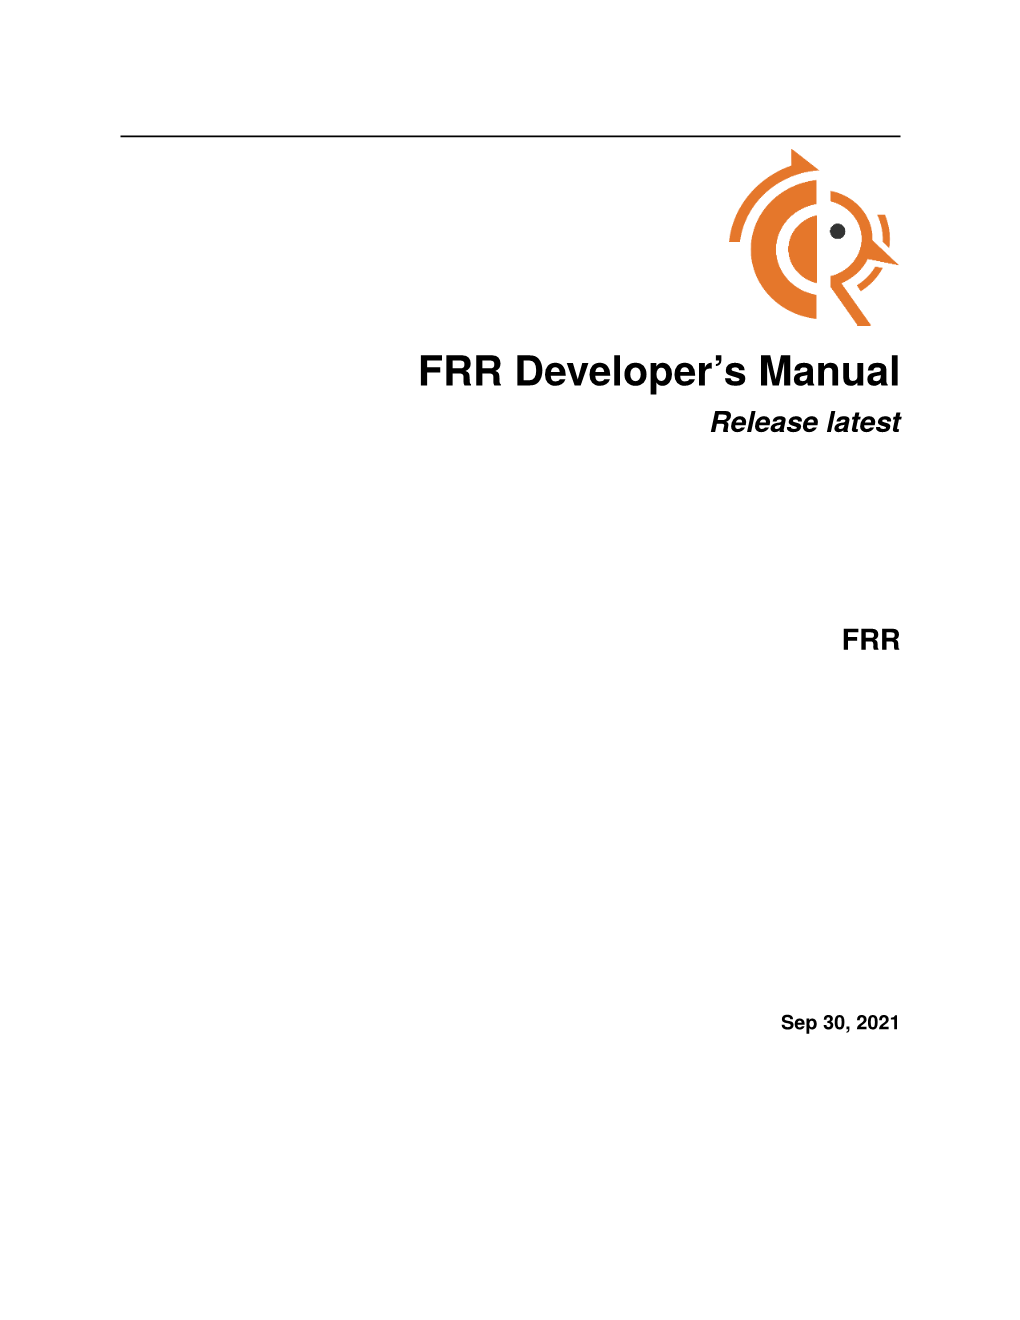 FRR Developer's Manual